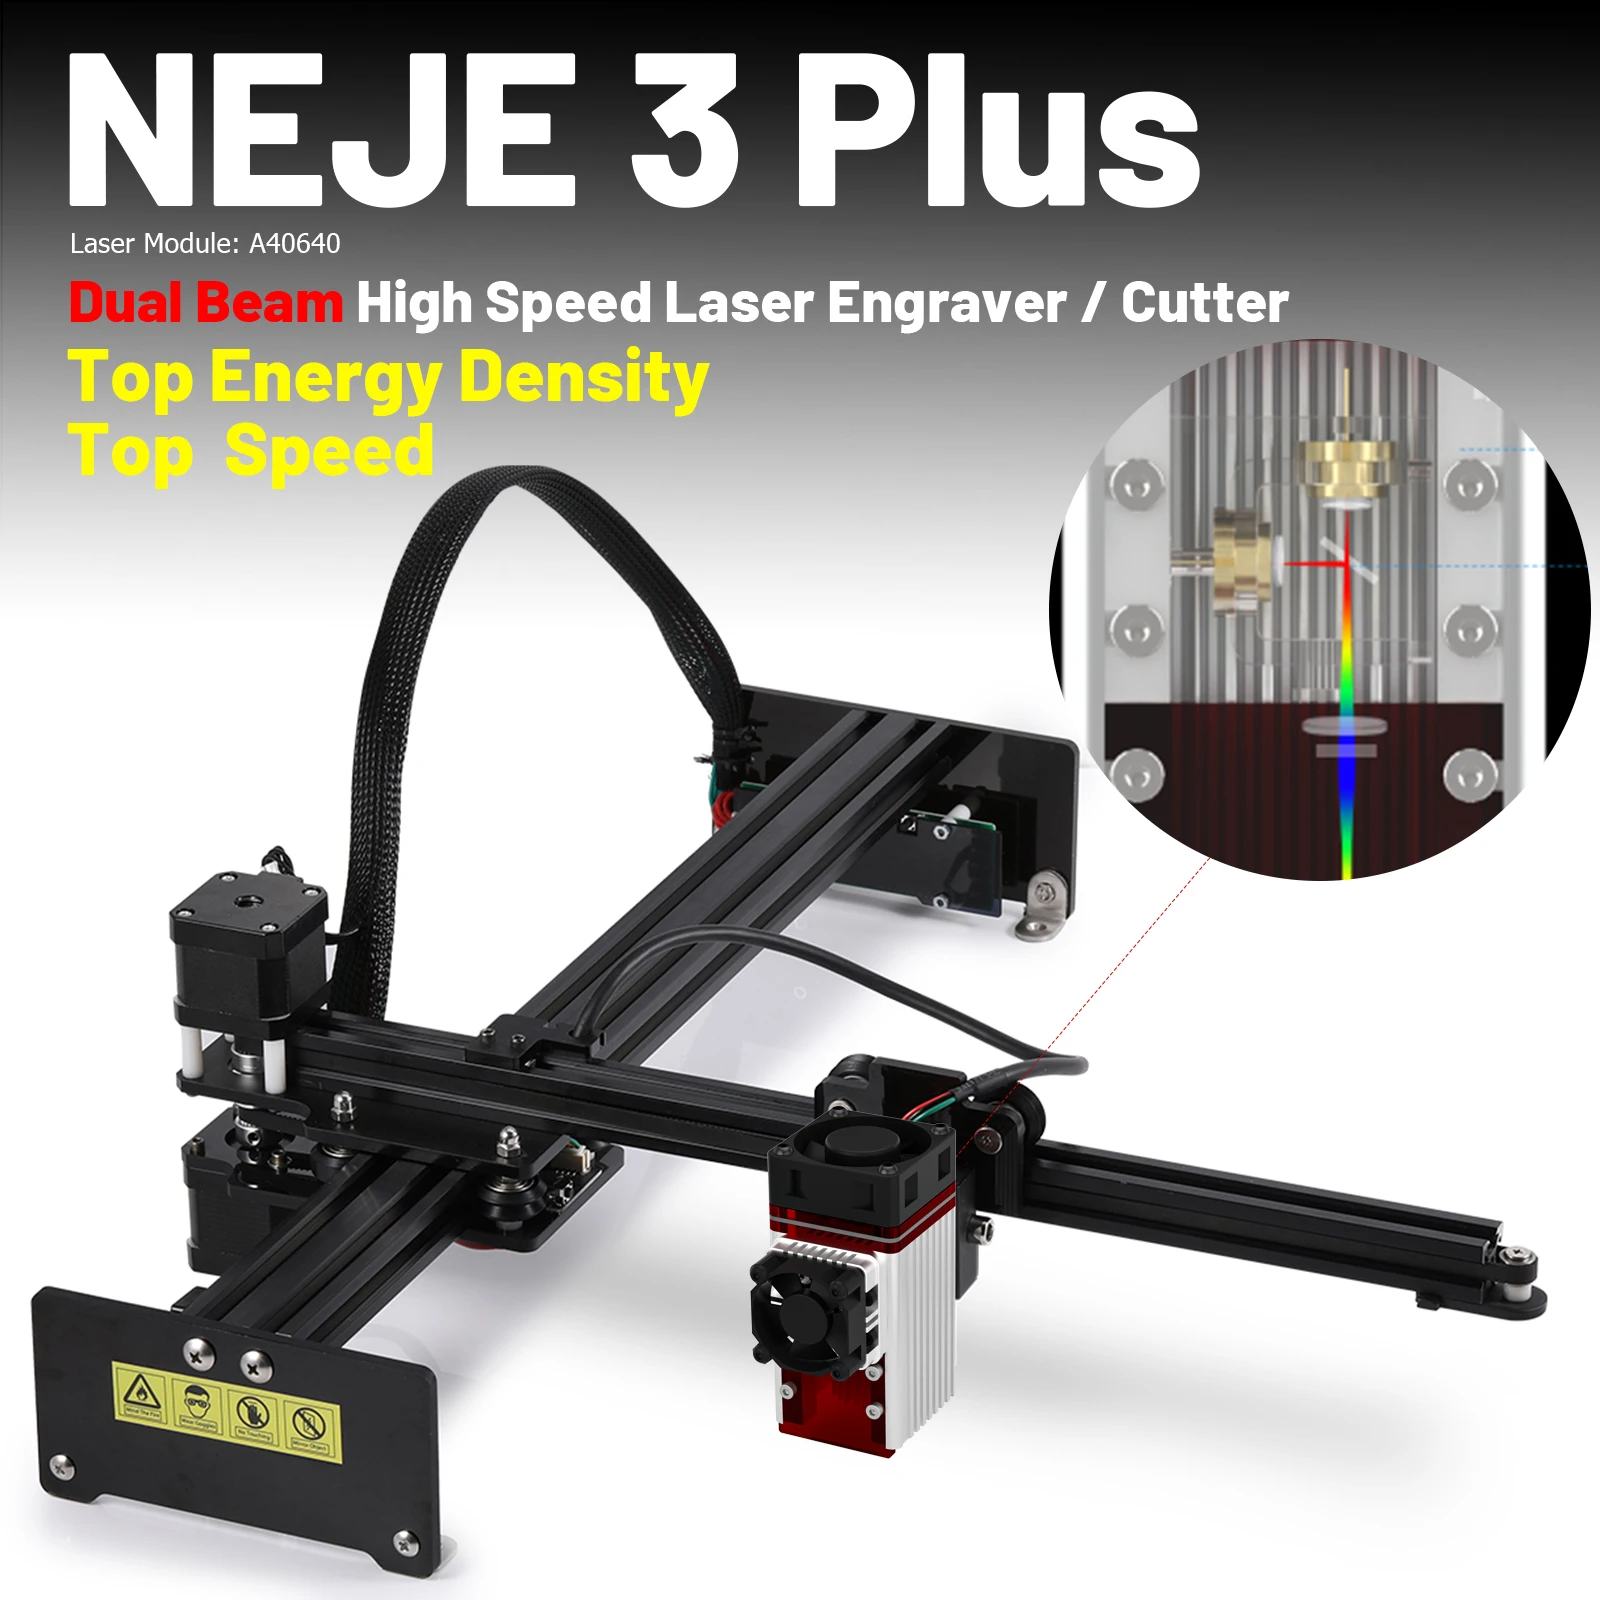 NEJE 3 PLUS Laser Engraver CNC 420*255mm Cutter Laser Printer APP Control DIY Wood Cutting Marking Metal Laser Engraving Machine enlarge